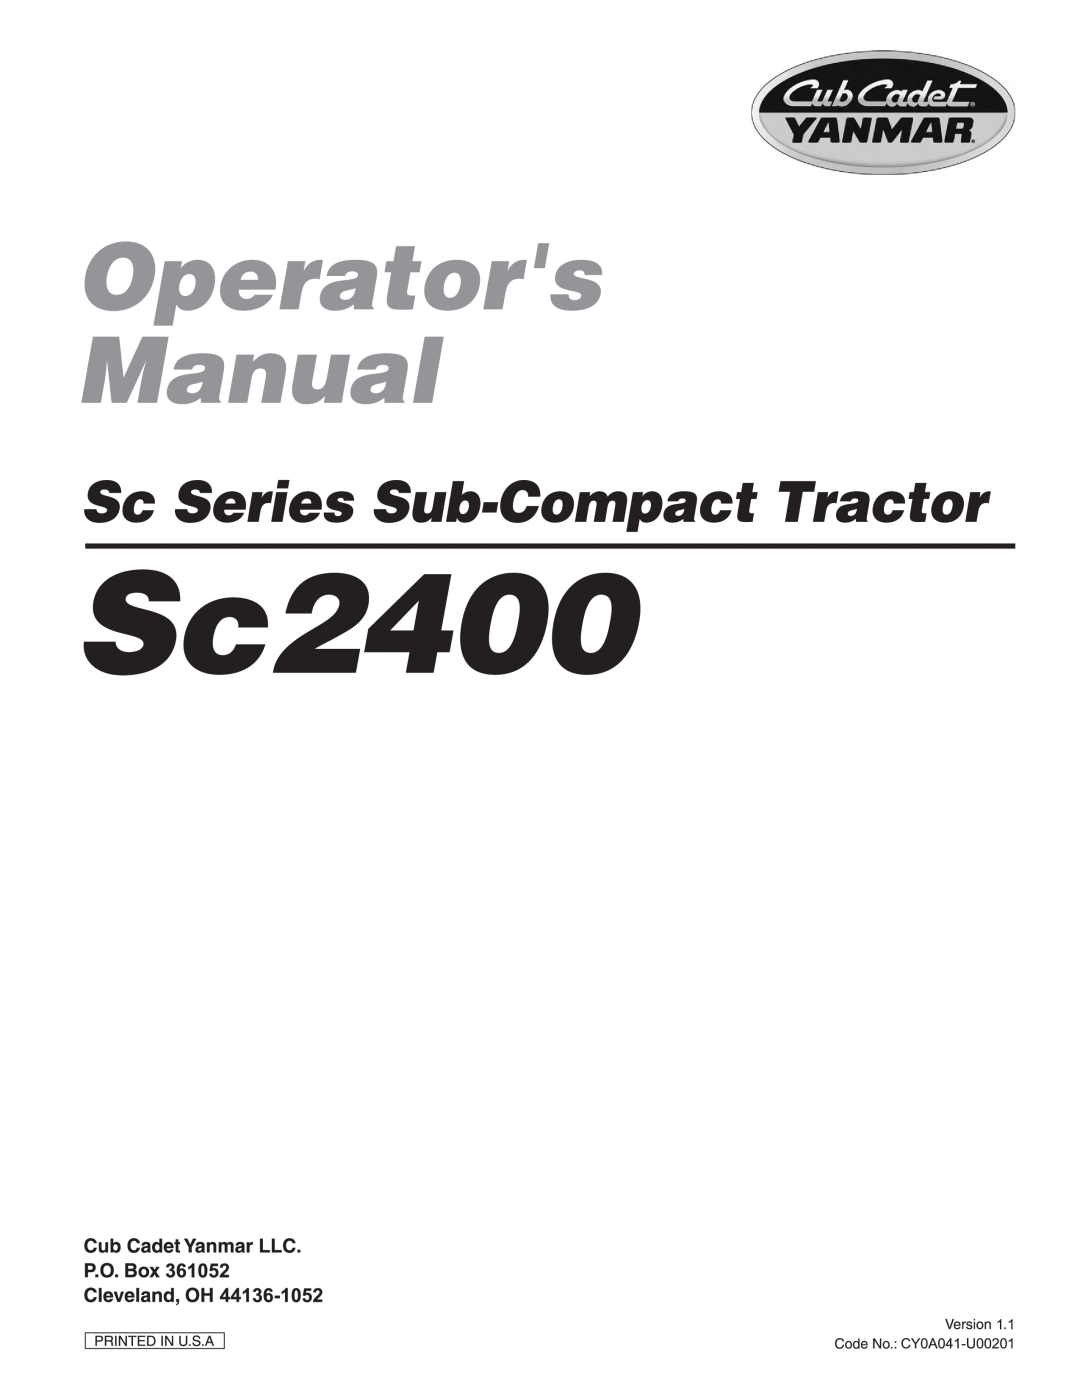 Cub Cadet SC2400 manual 